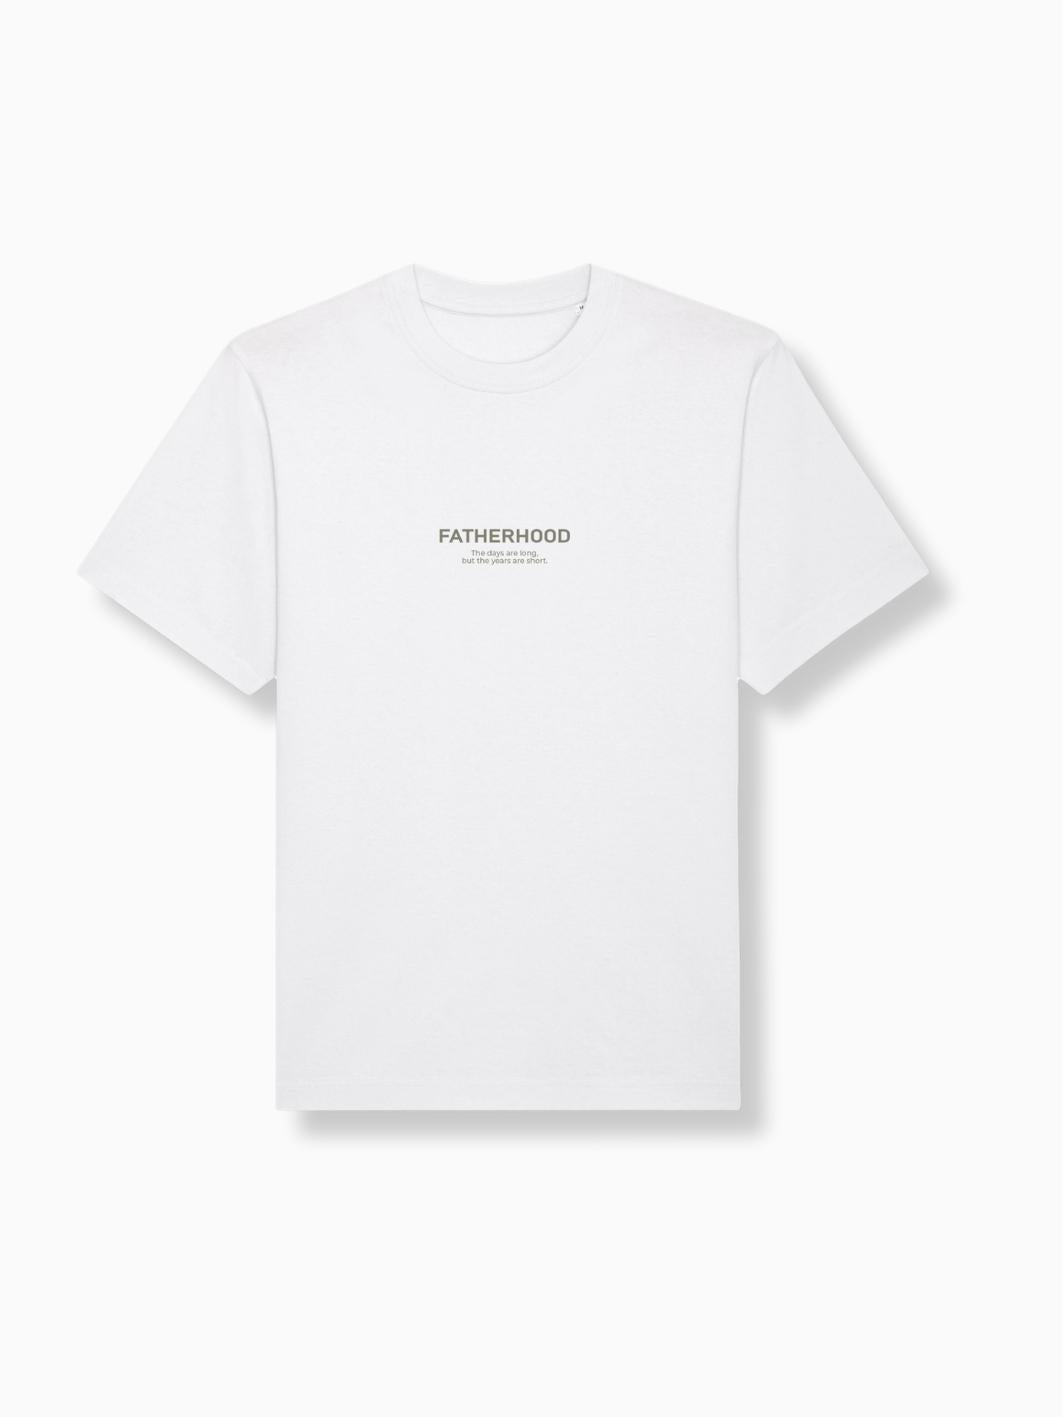 FATHERHOOD - Herren T-Shirt weiß - FAMVIBES 